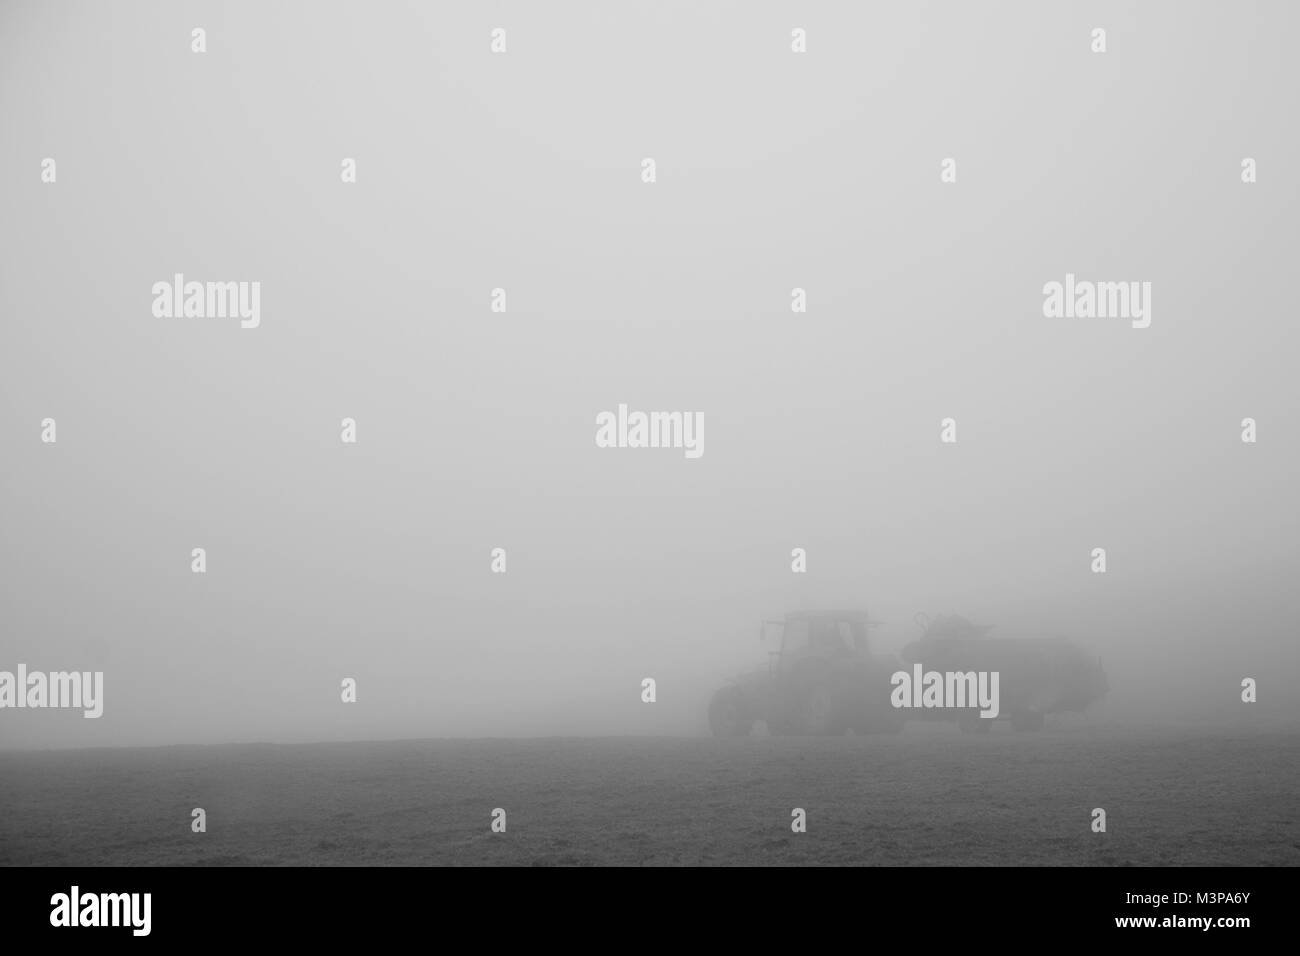 Un agriculteur nourrit leurs moutons dans les profondeurs d'un brouillard d'hiver Banque D'Images